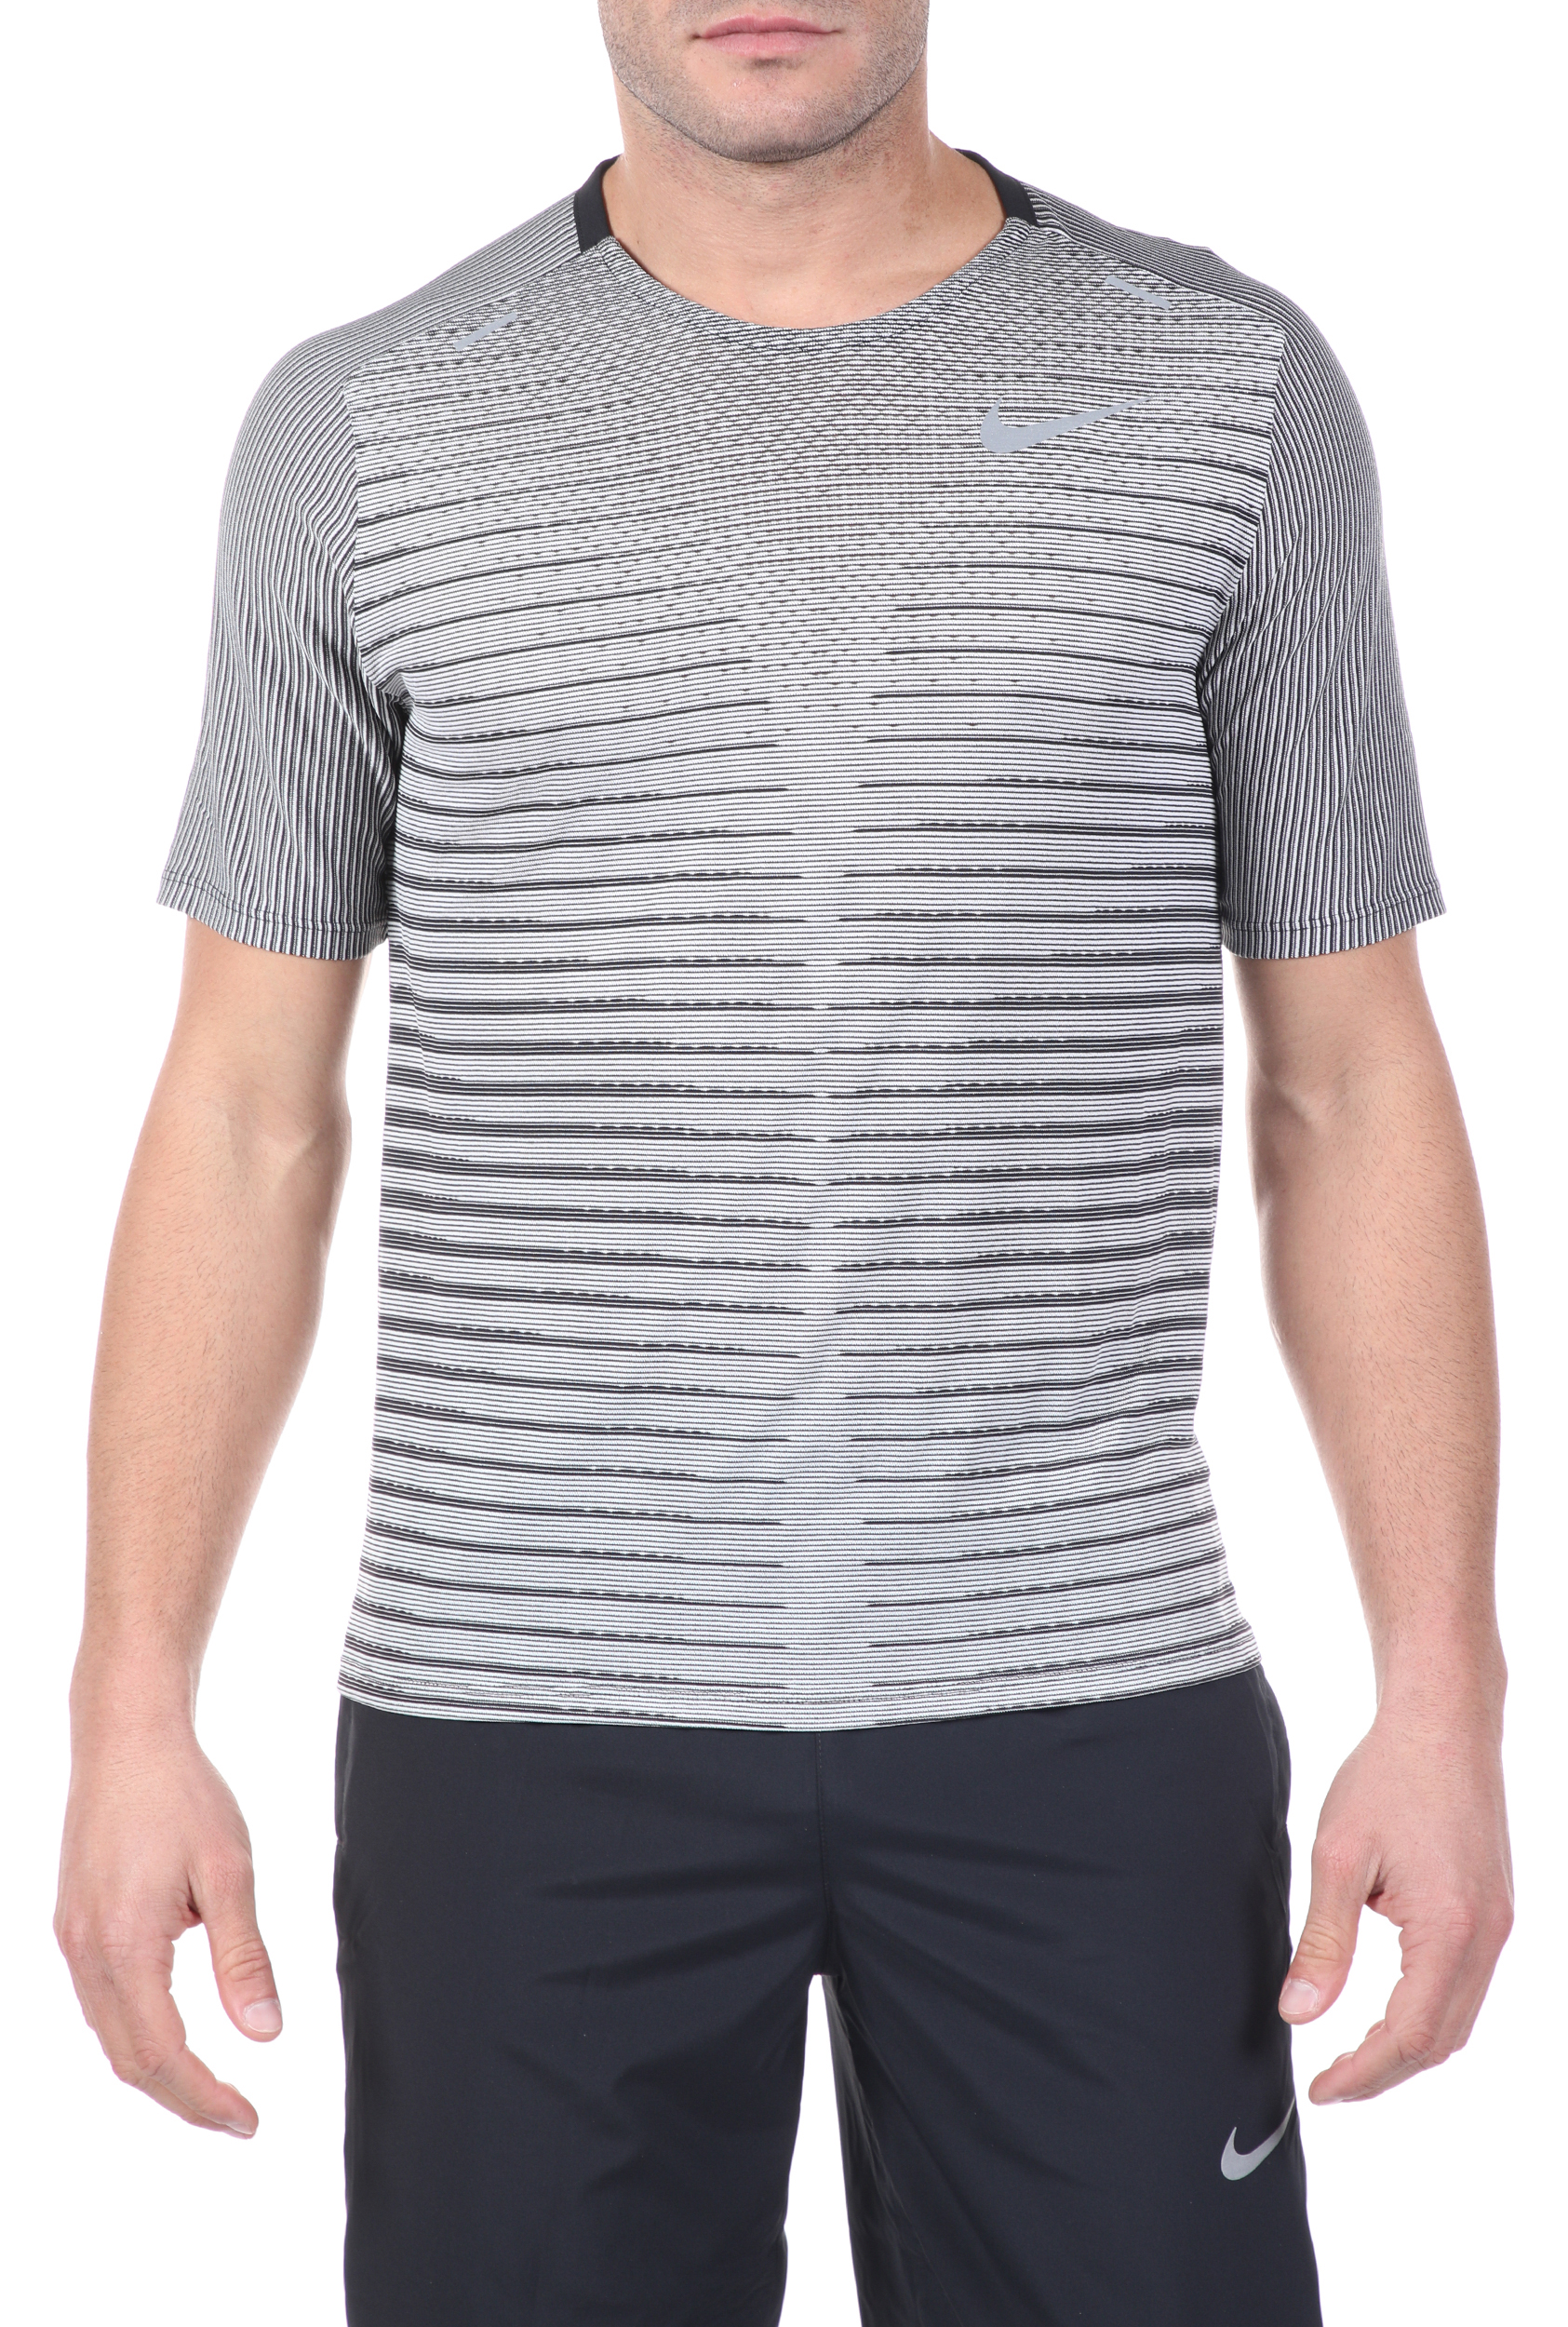 Ανδρικά/Ρούχα/Αθλητικά/T-shirt NIKE - Ανδρική μπλούζα NΙKΕ TECHKNIT TOP SS FF λευκή μαύρη